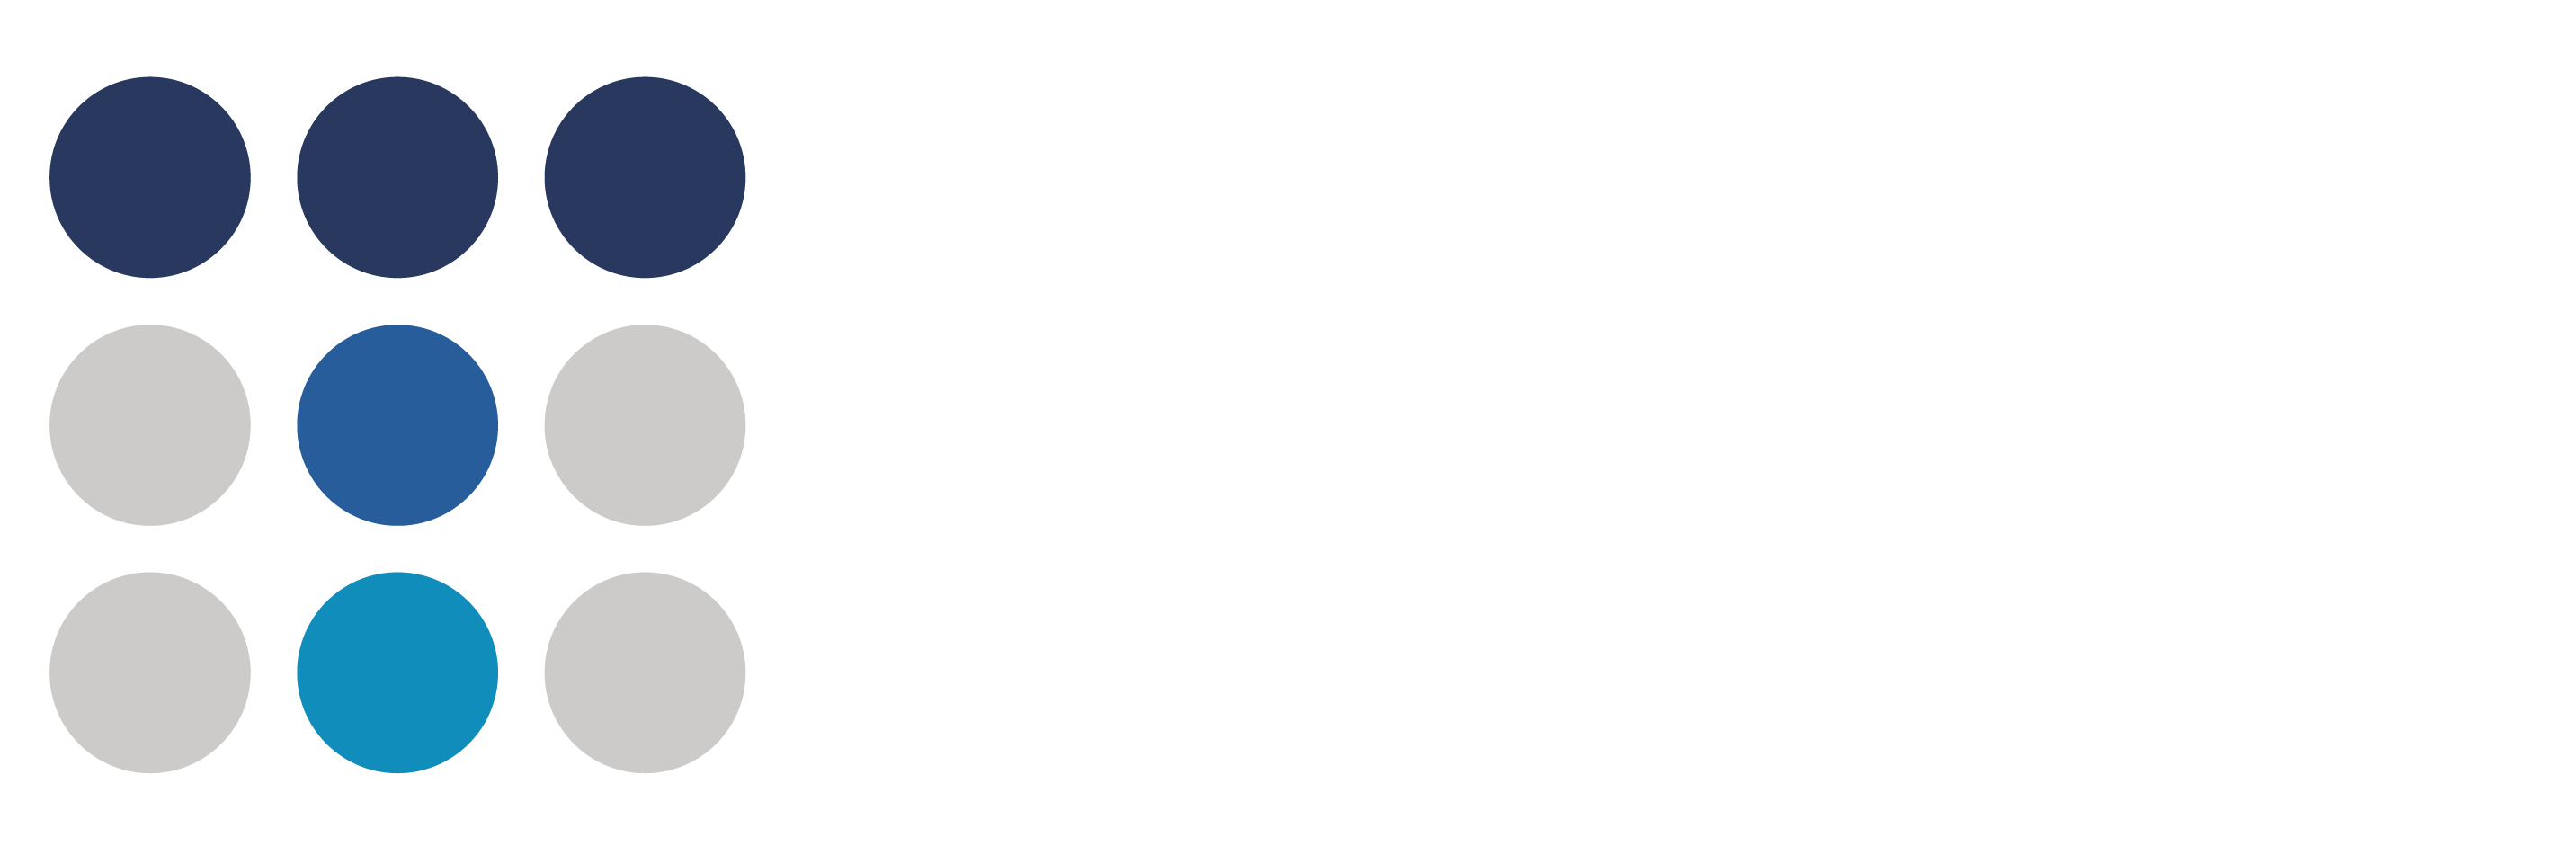 Trinity Groups White logo